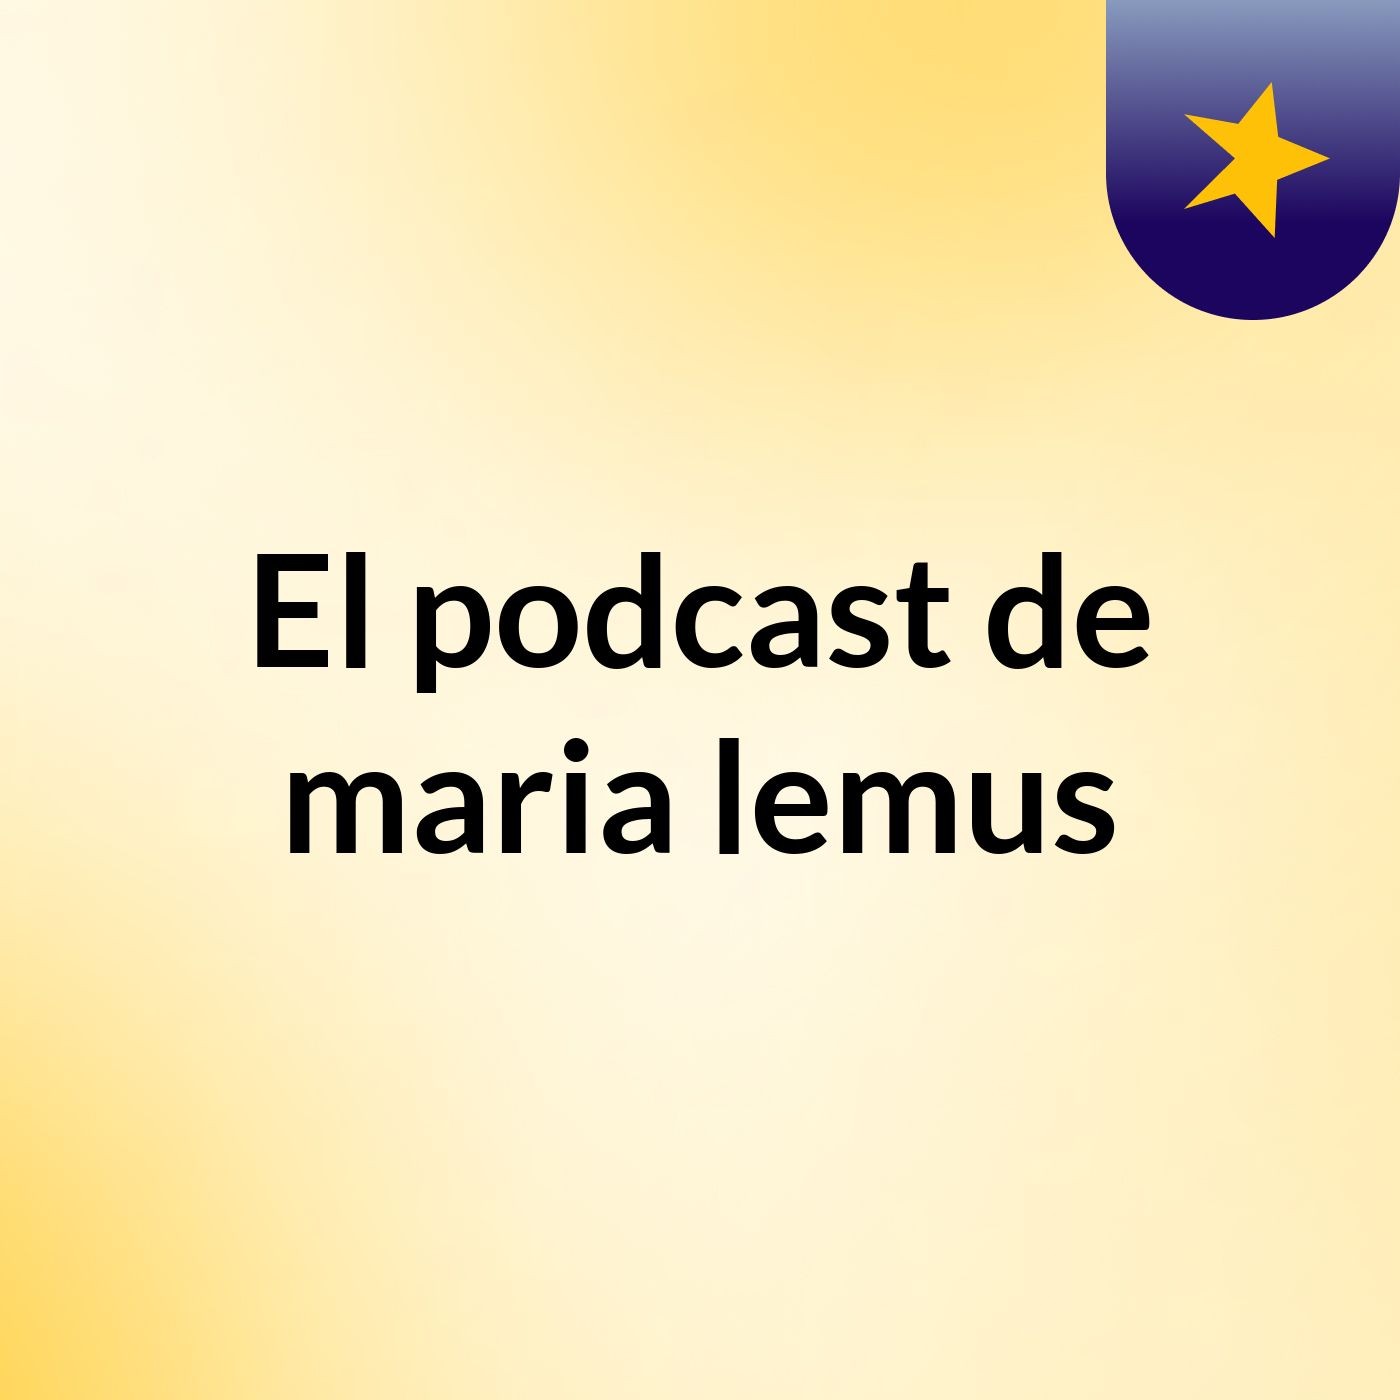 El podcast de maria lemus